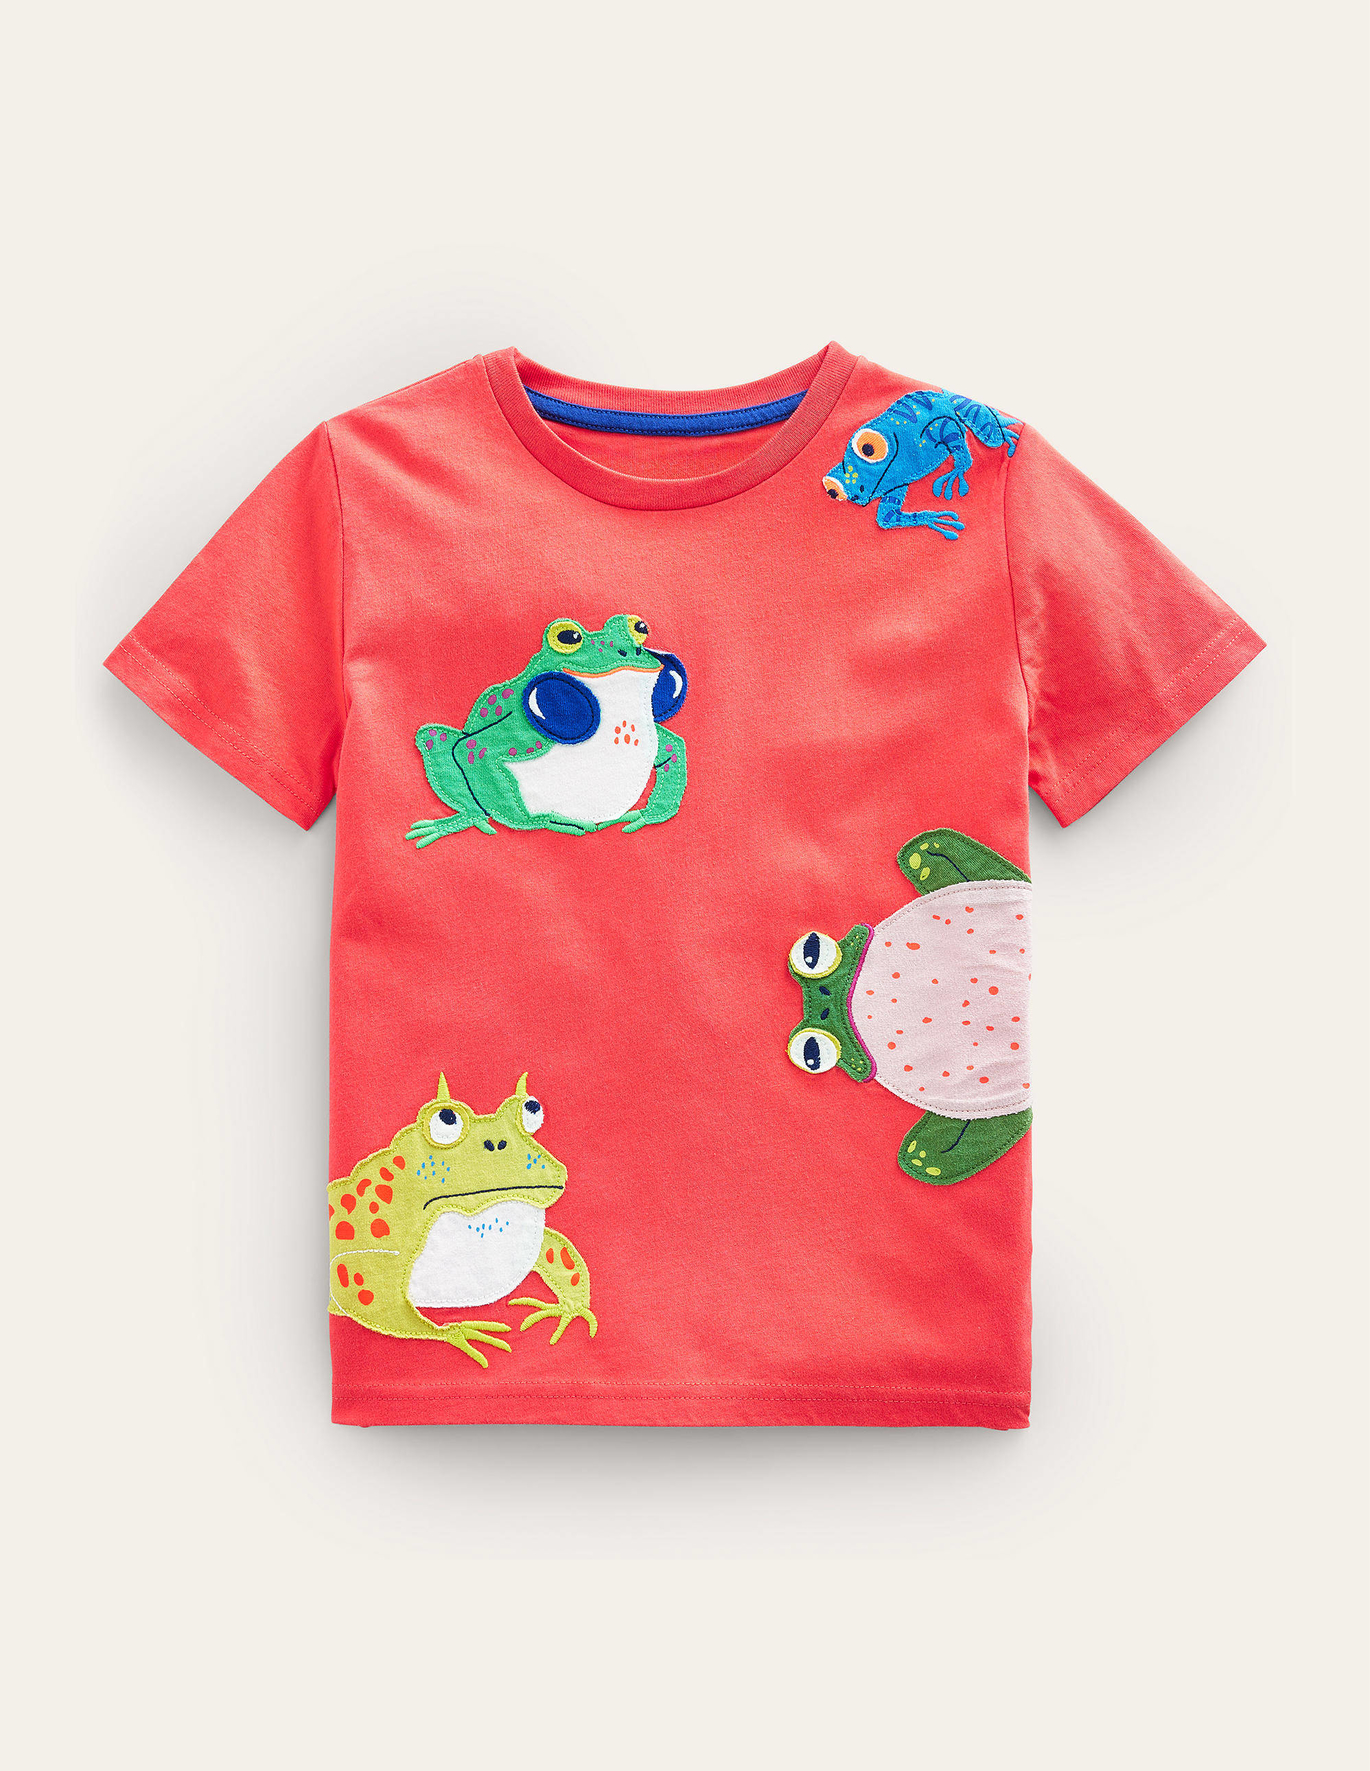 Boden Applique Textured T-shirt - Jam Frogs